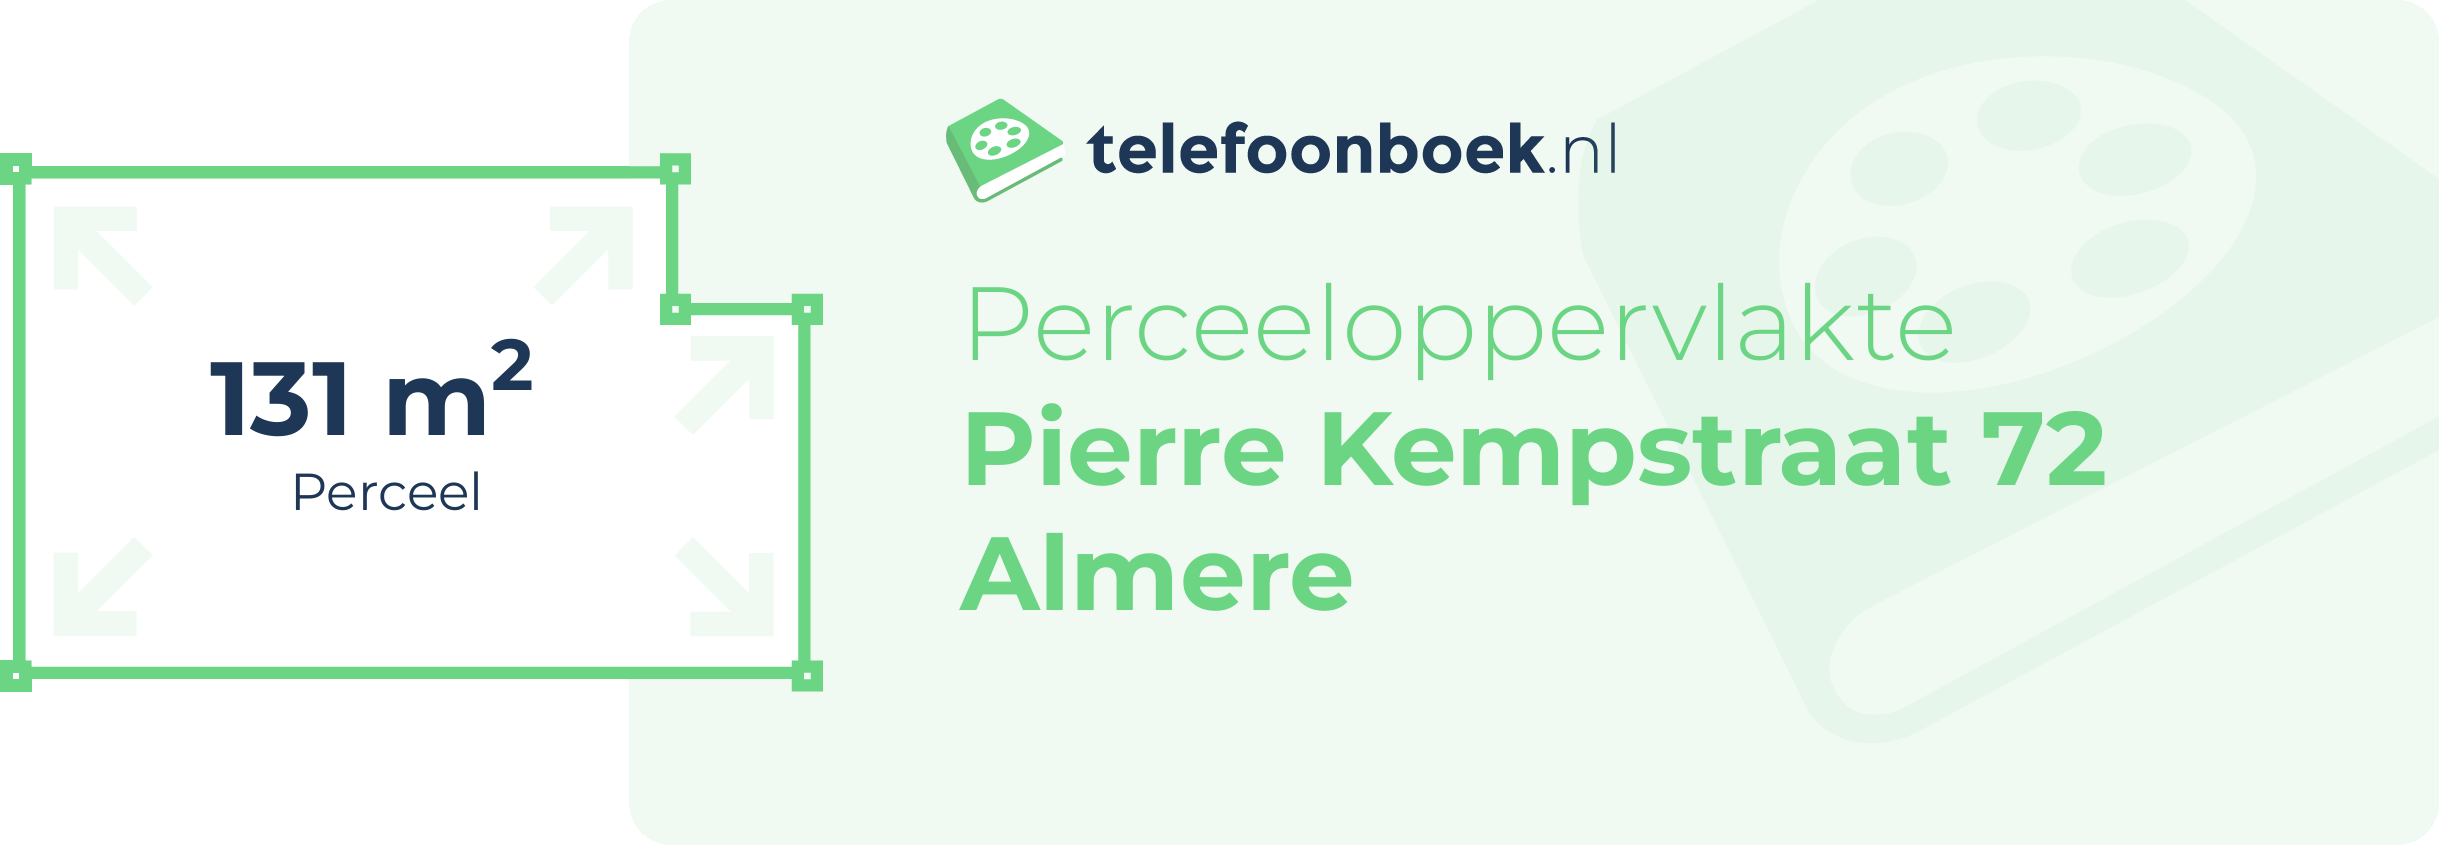 Perceeloppervlakte Pierre Kempstraat 72 Almere